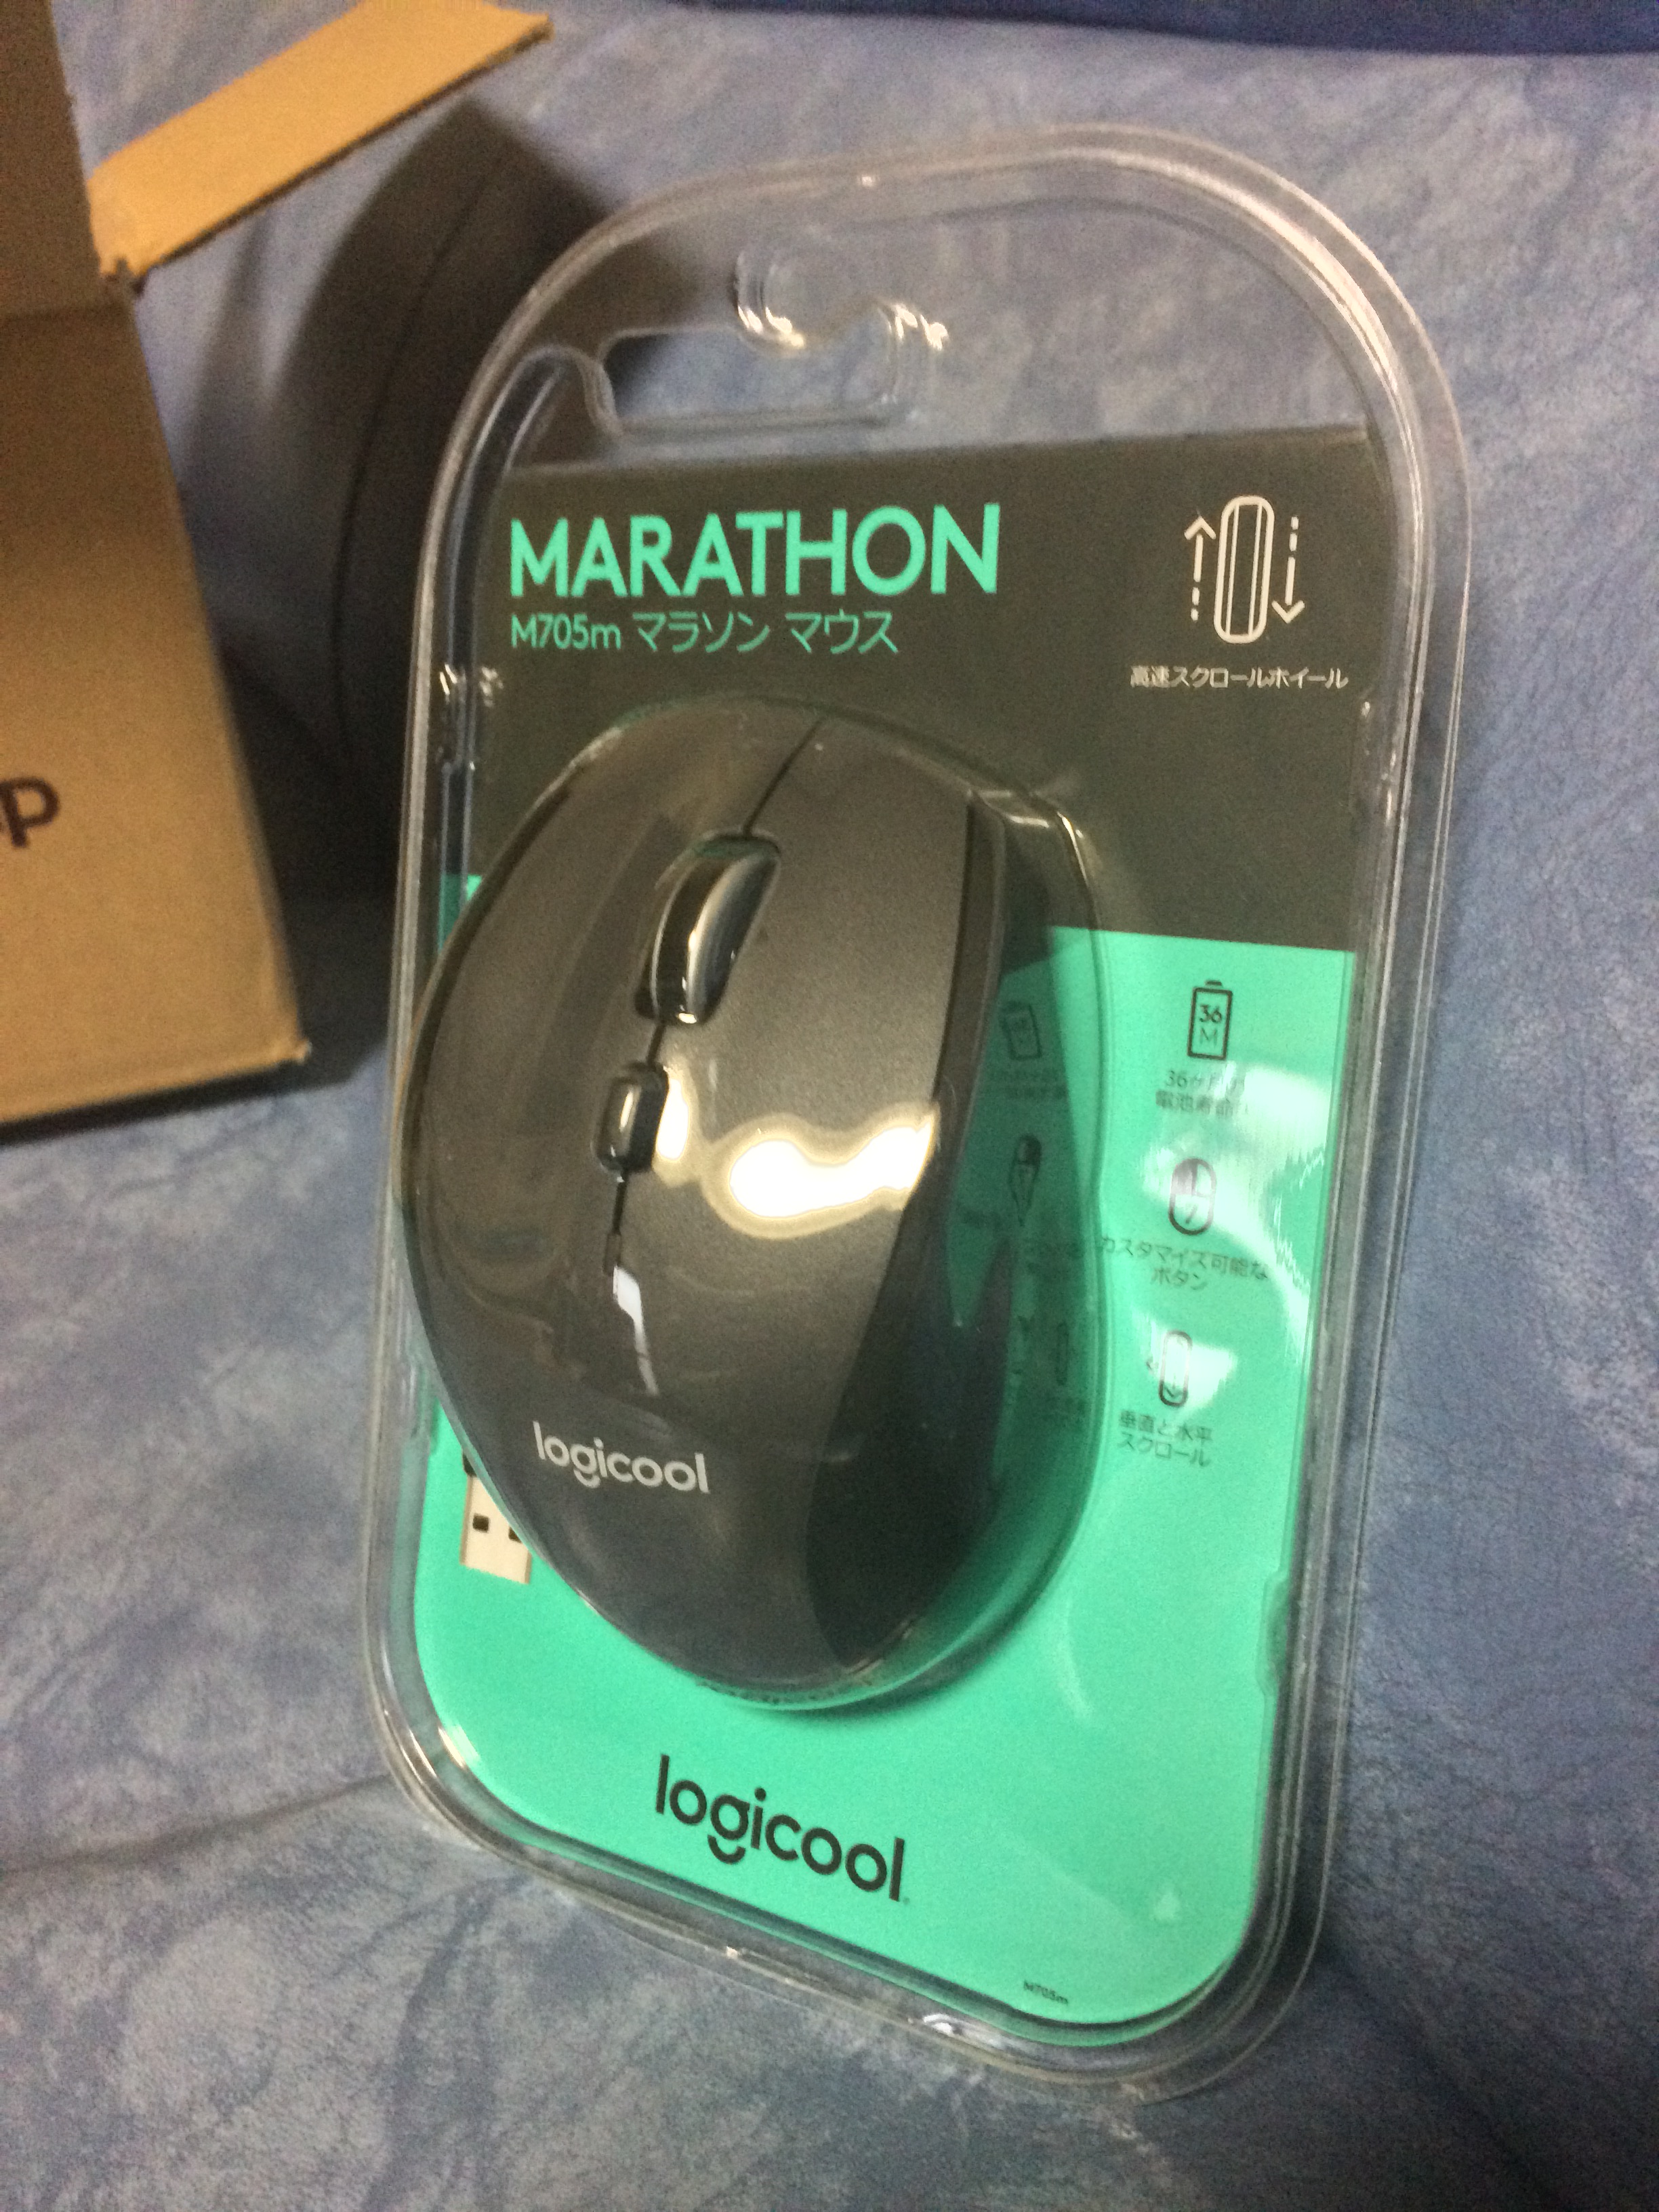 ロジクール(Logicool)のM705 Marathon Mouse)をパッケージごと撮影した写真